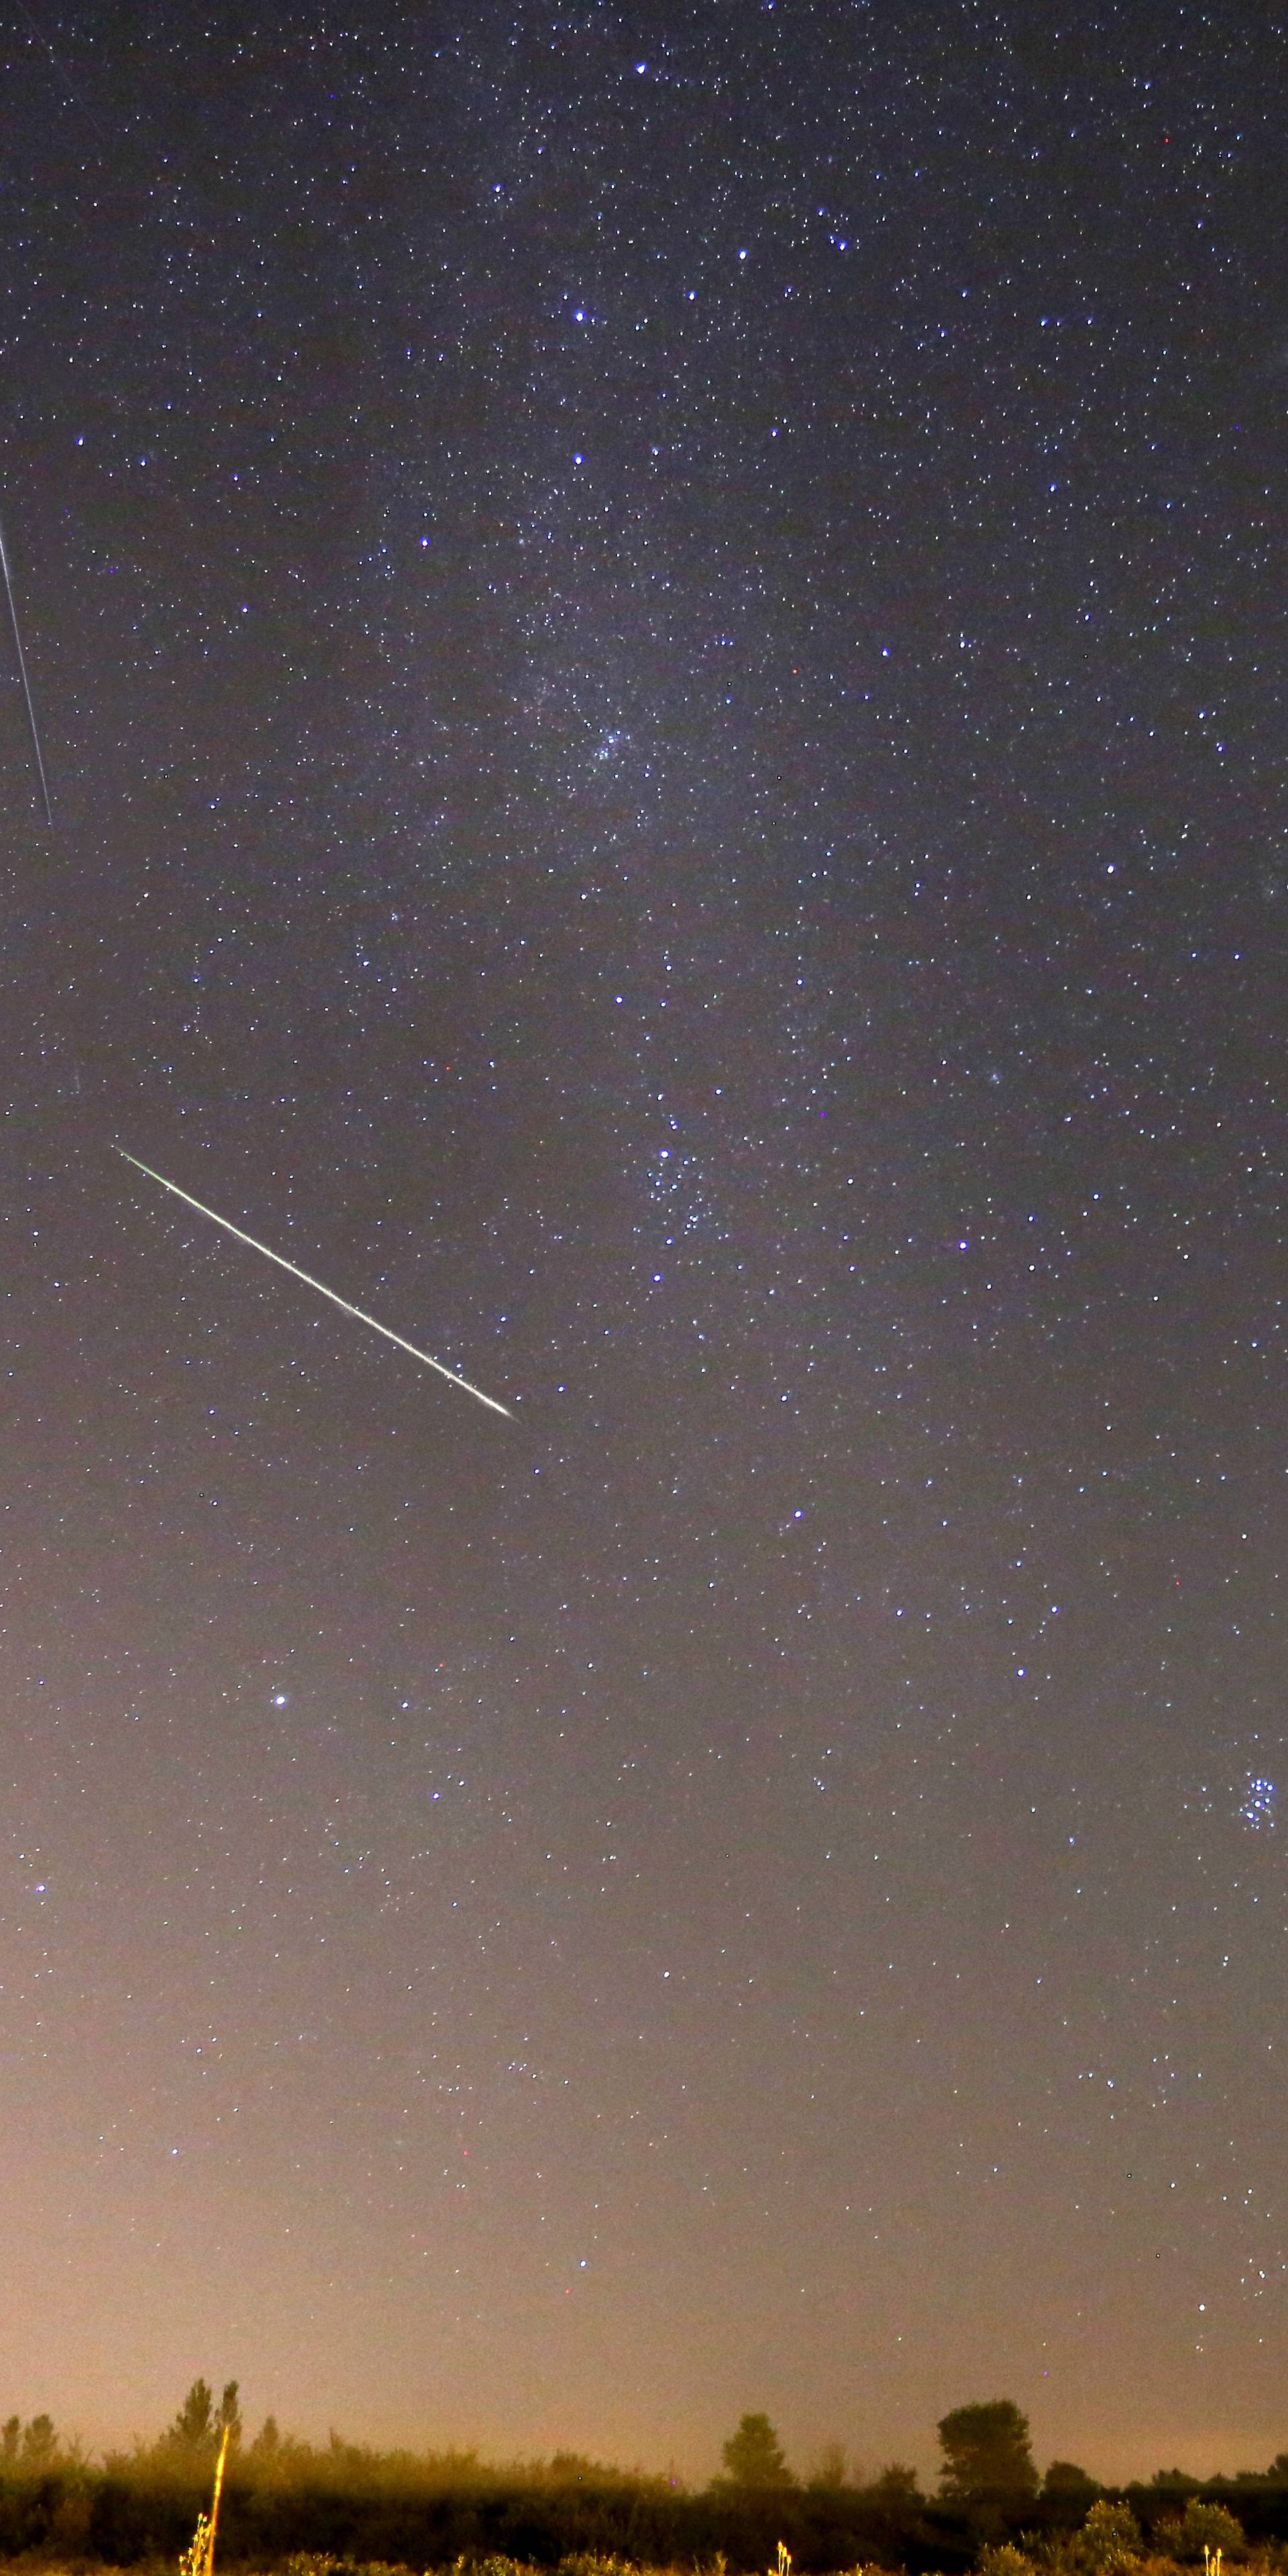 Pogledajte u nebo: Možda ćete ugledati pravu kišu meteora